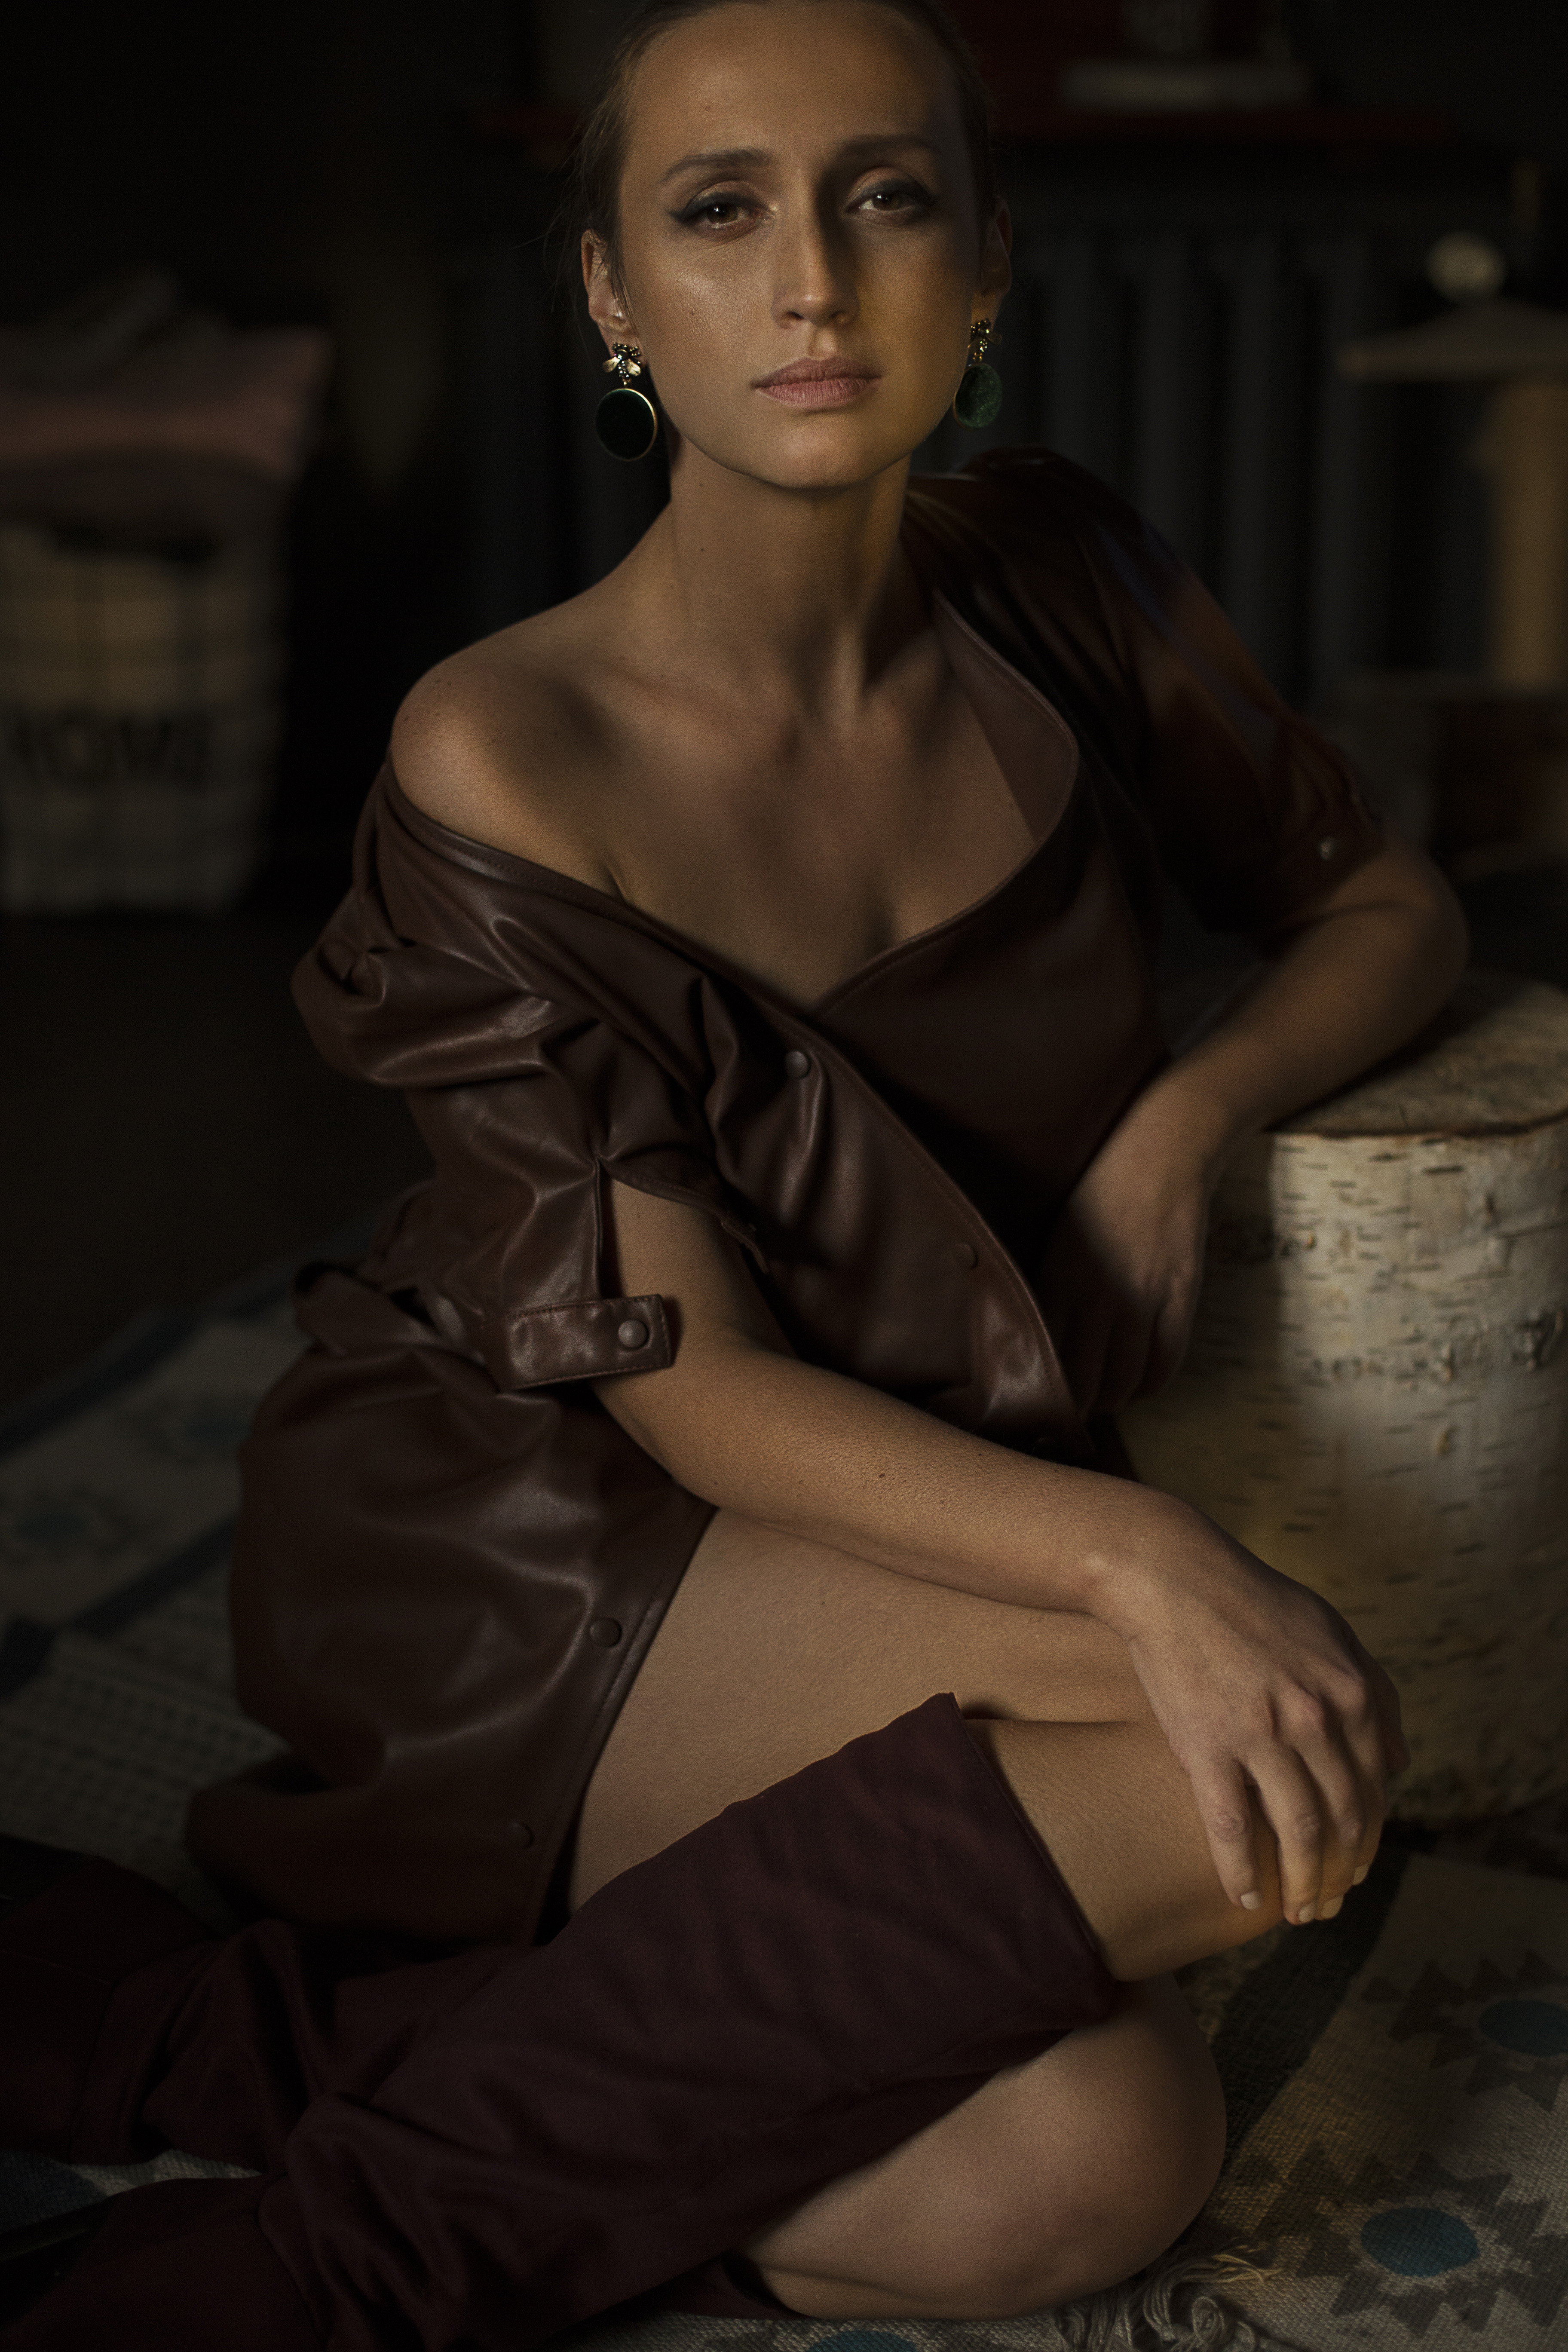 Ania Gzyra / Actress / 2018